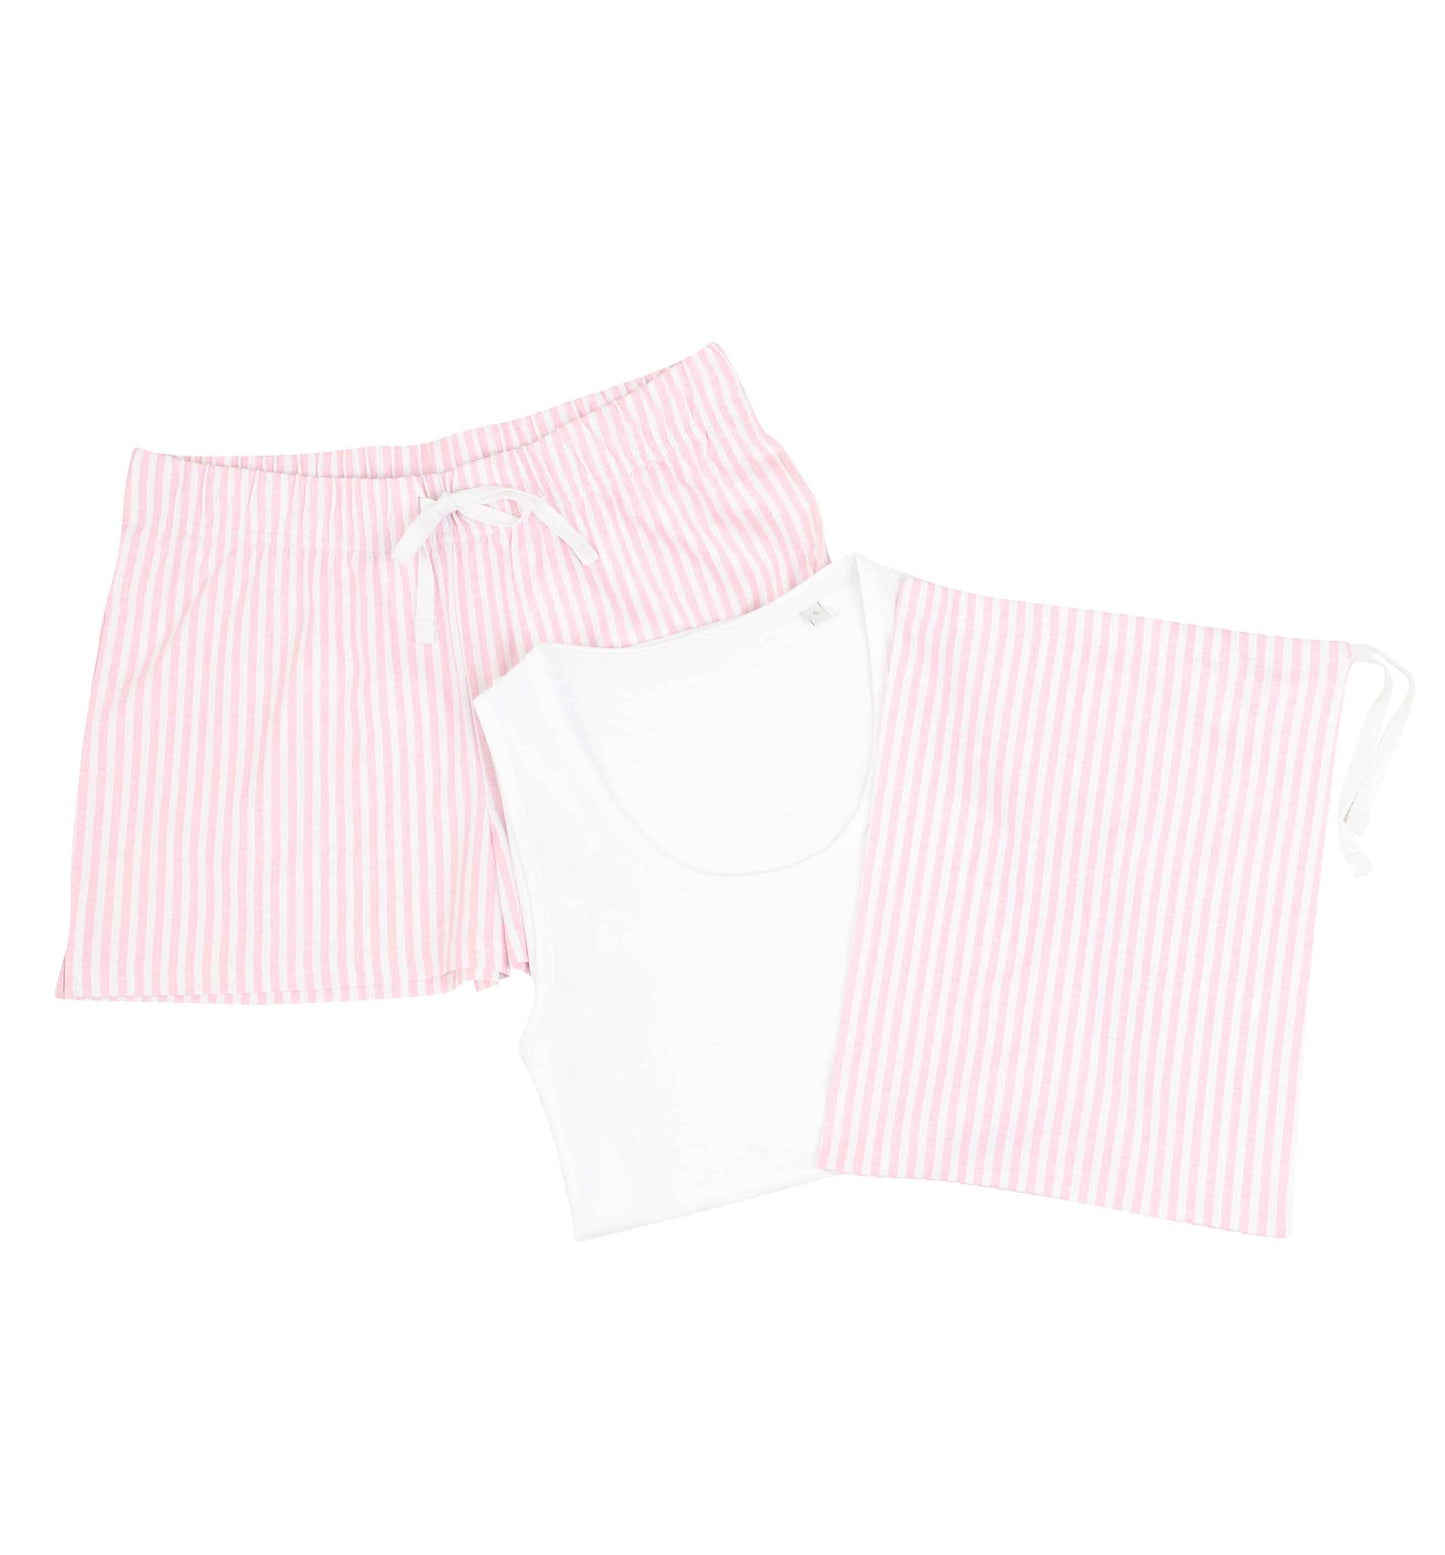 Married at sea pink anchors |  Pyjama shorts set